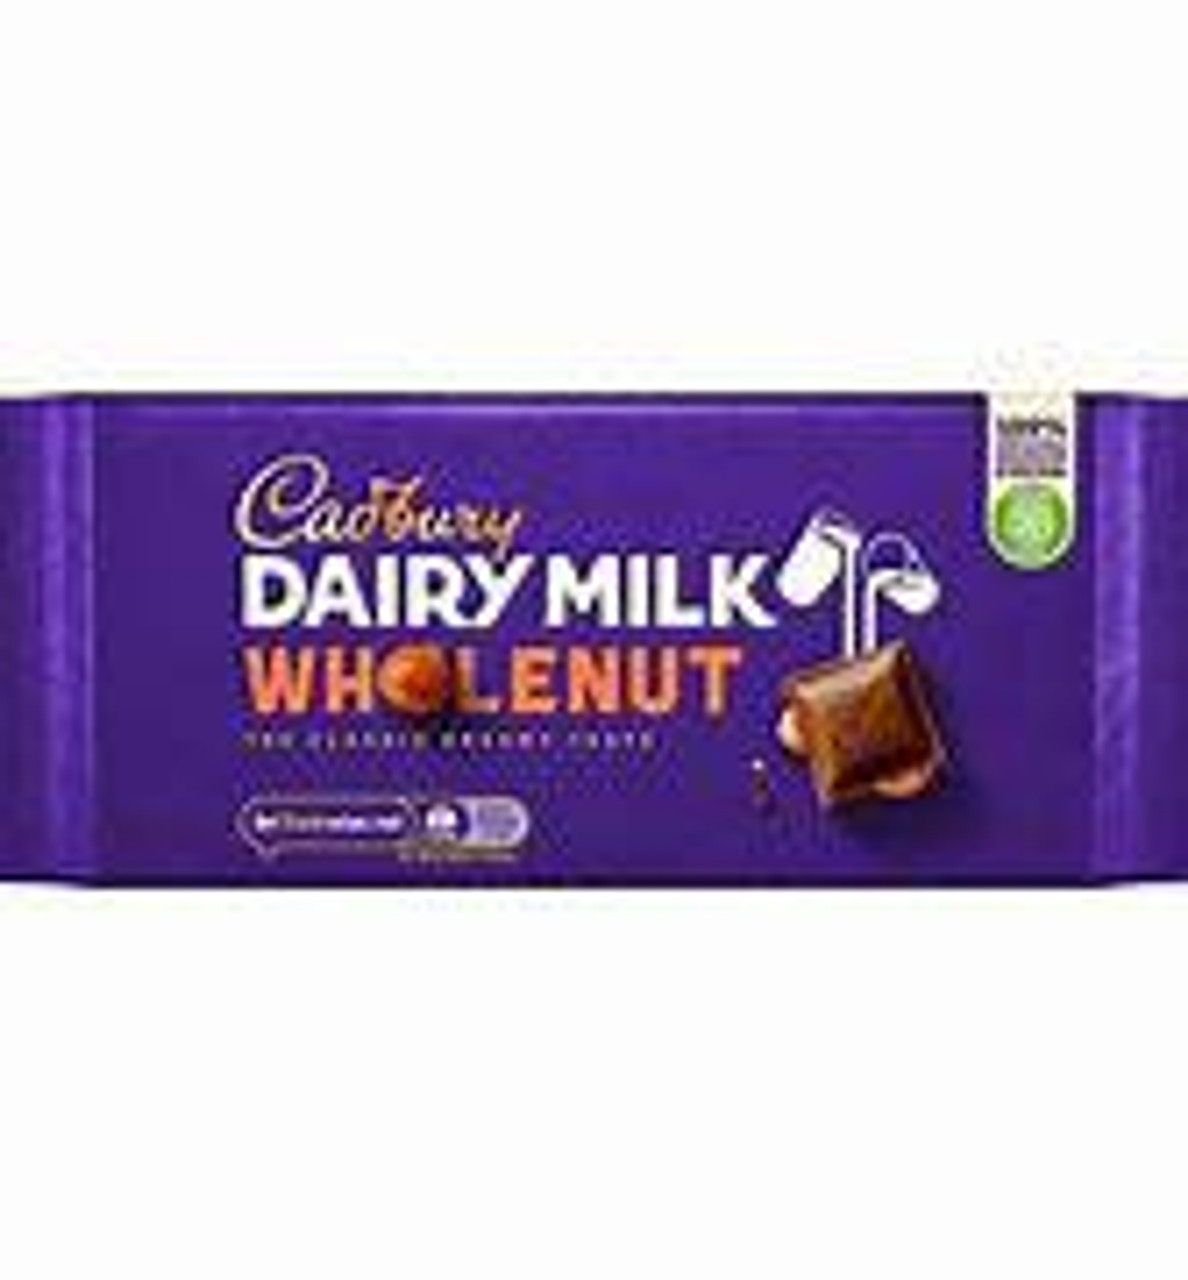 Cadbury - Dairy Milk Whole Nut, 180g